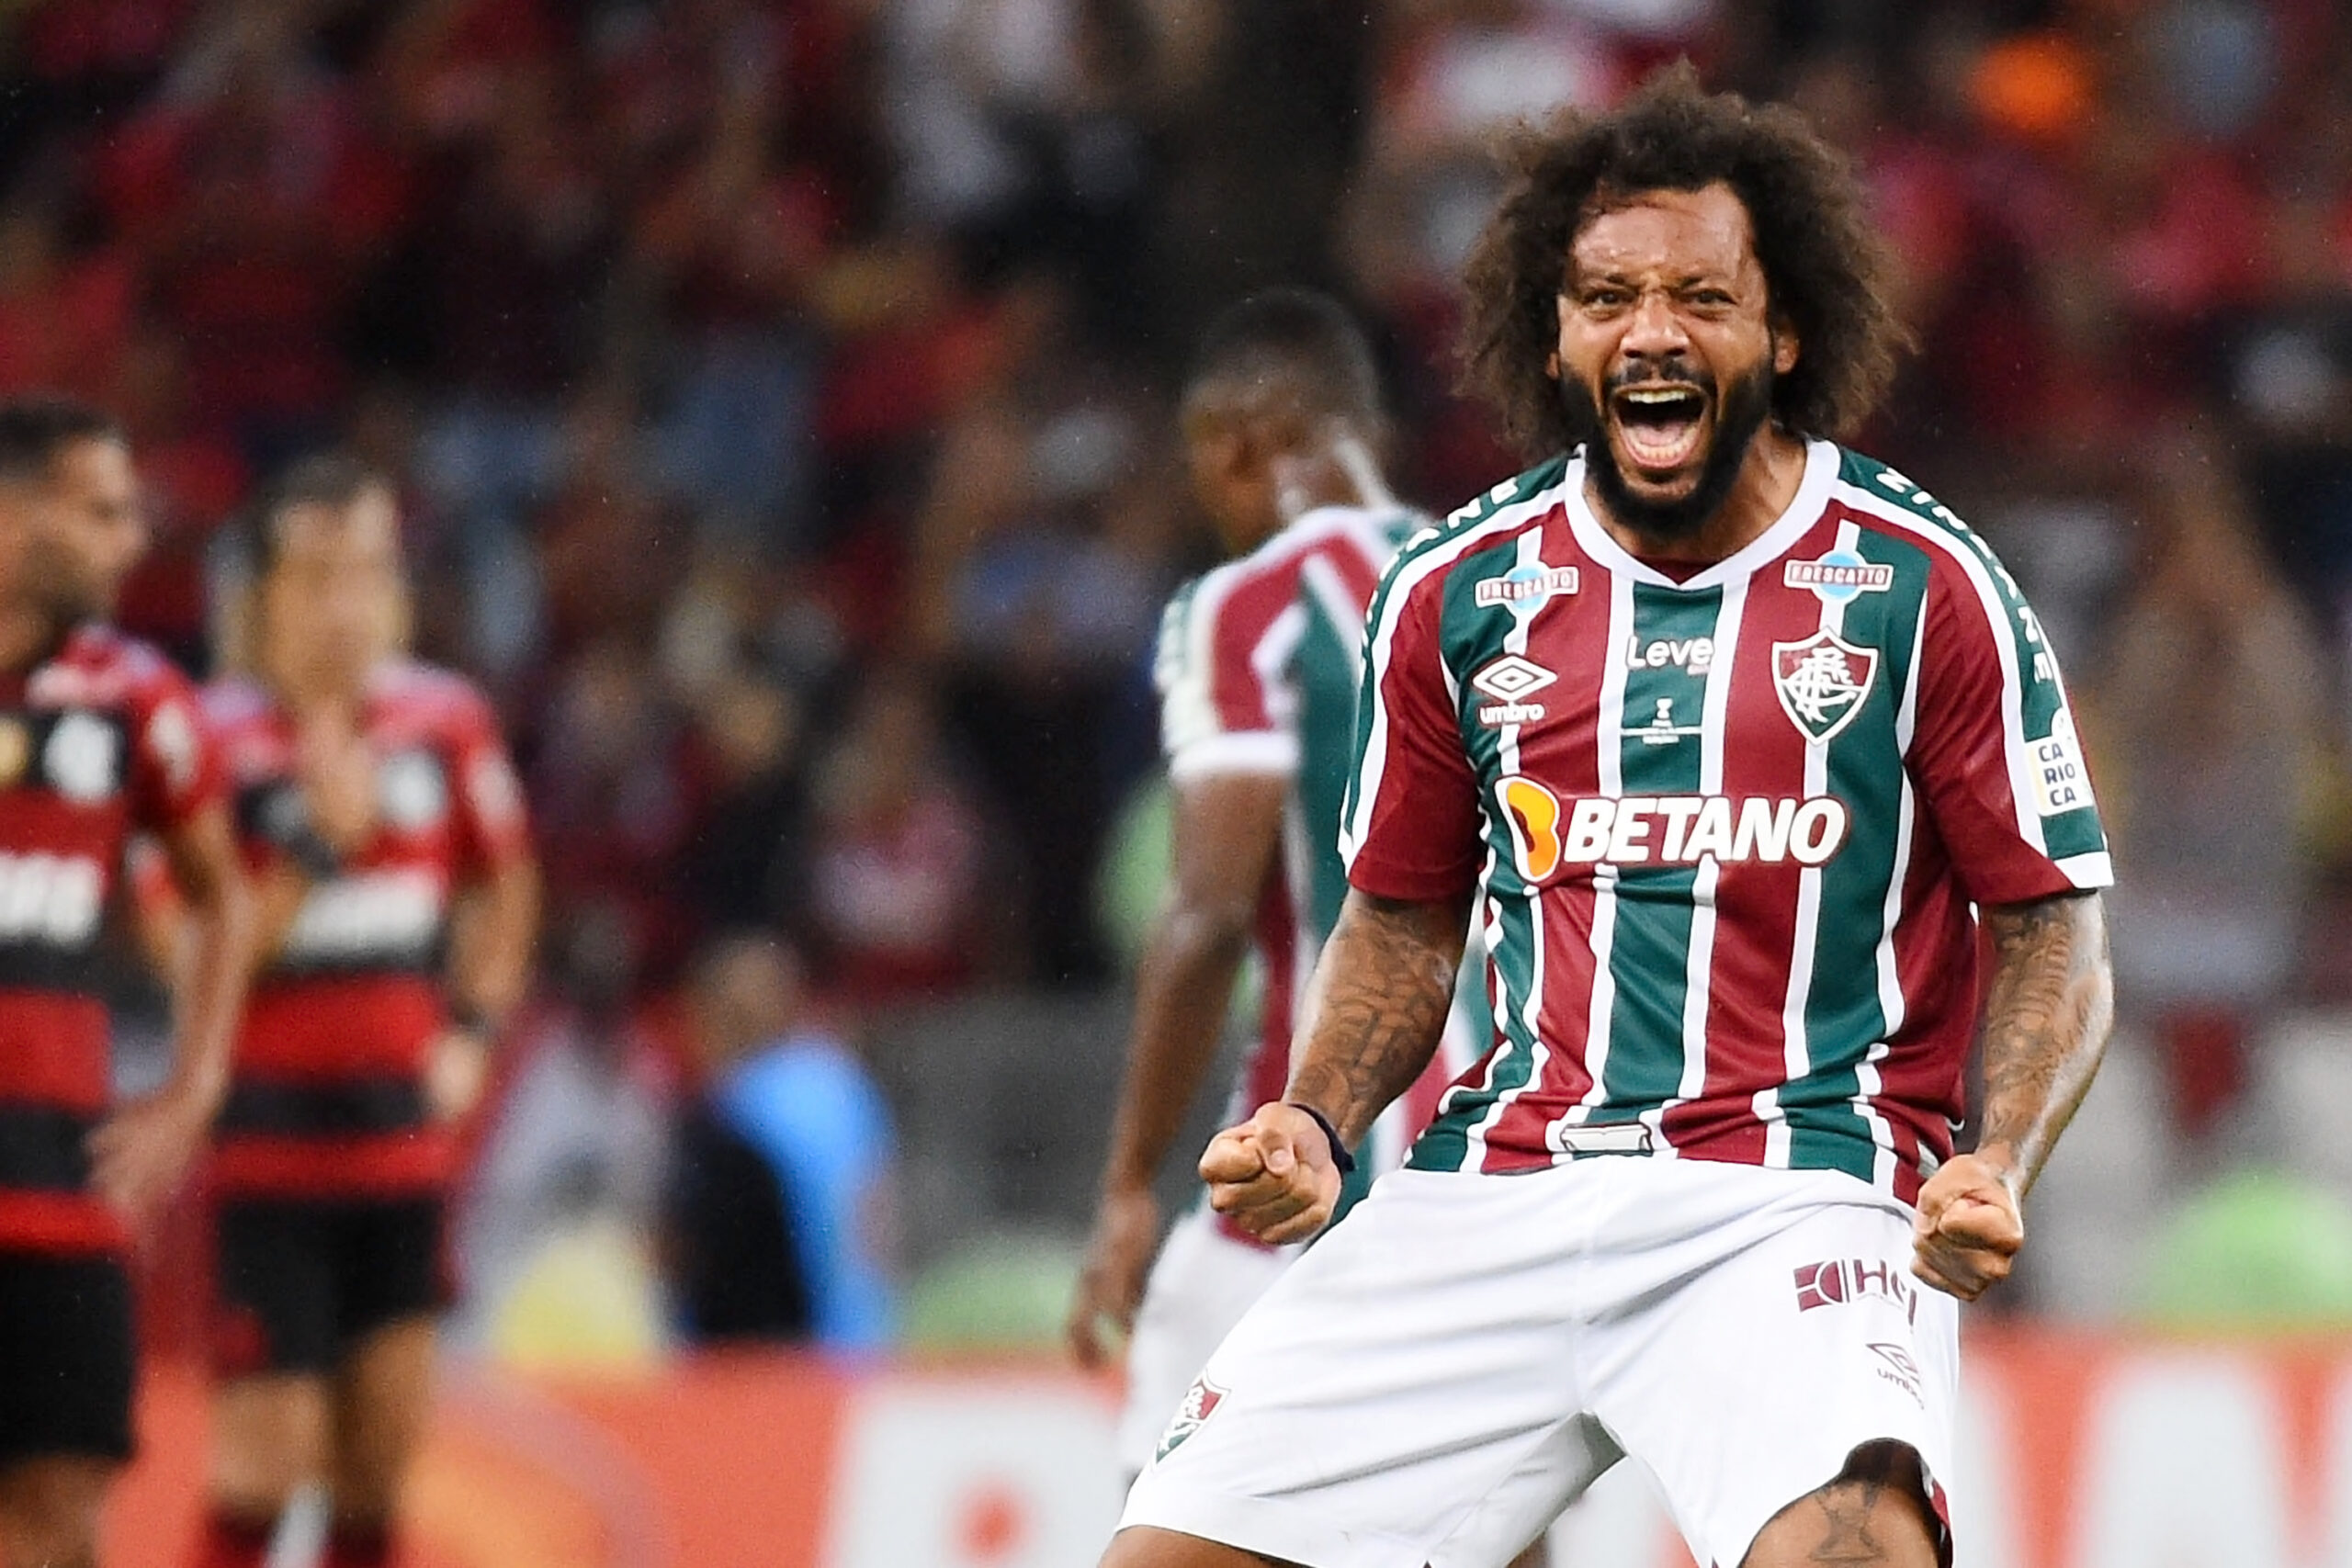 Campeonato Brasileiro 2023 - Álbum Brasileirão- Jogadores, Times